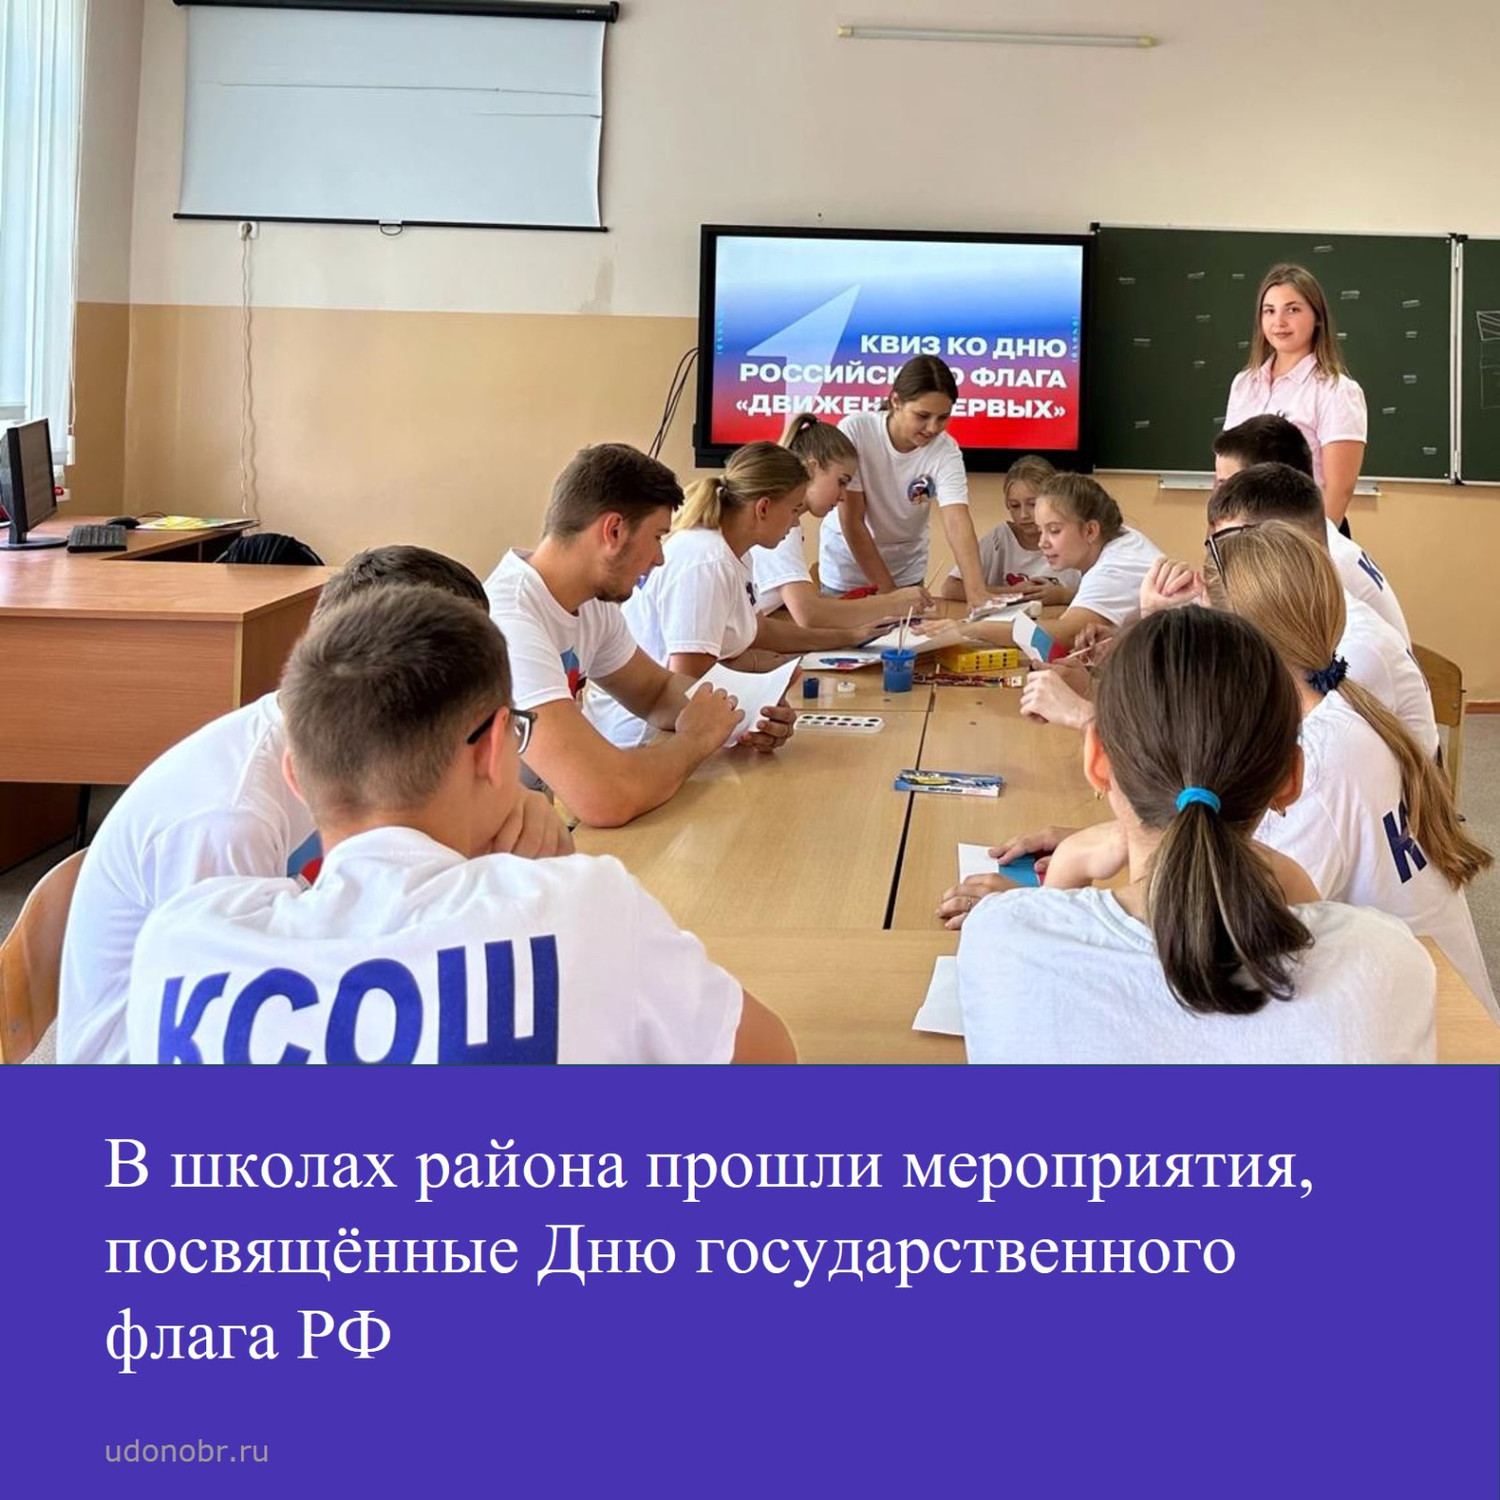 В школах района прошли мероприятия, посвящённые Дню государственного флага РФ